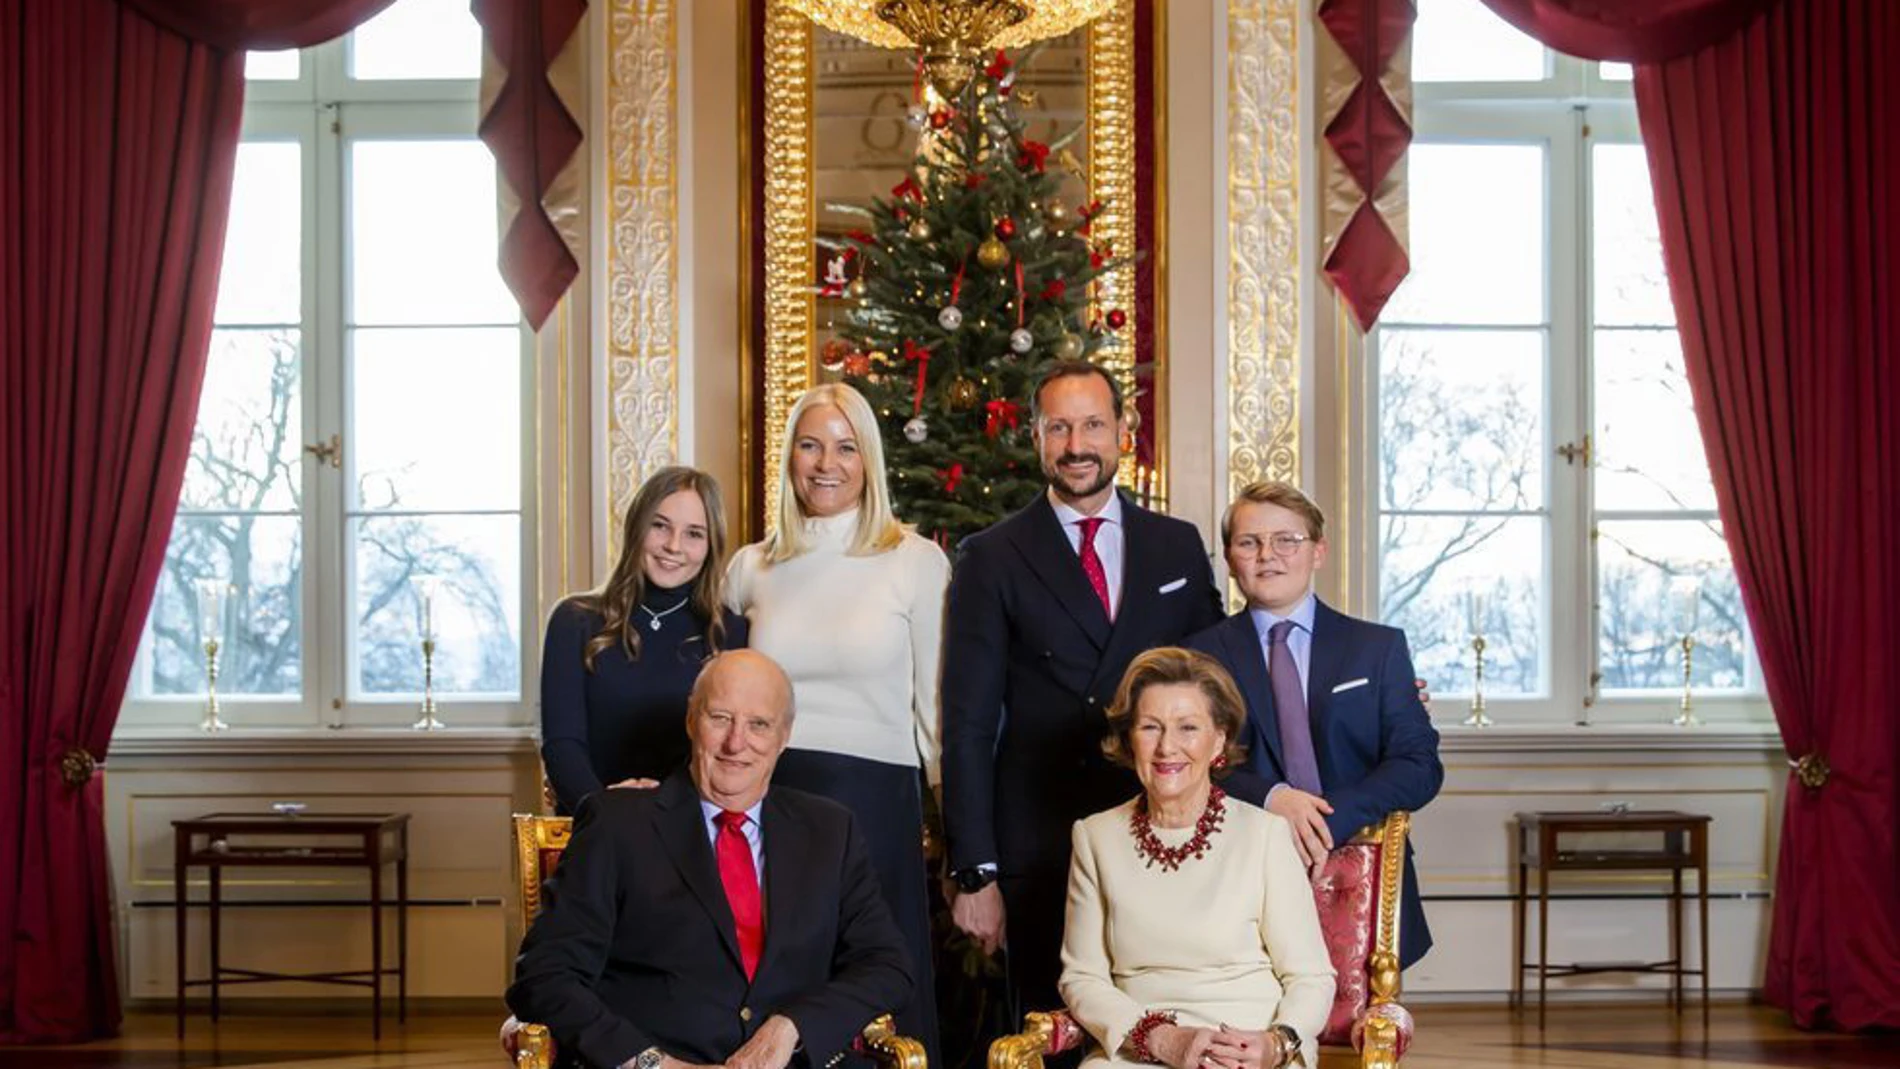 La familia real noruega